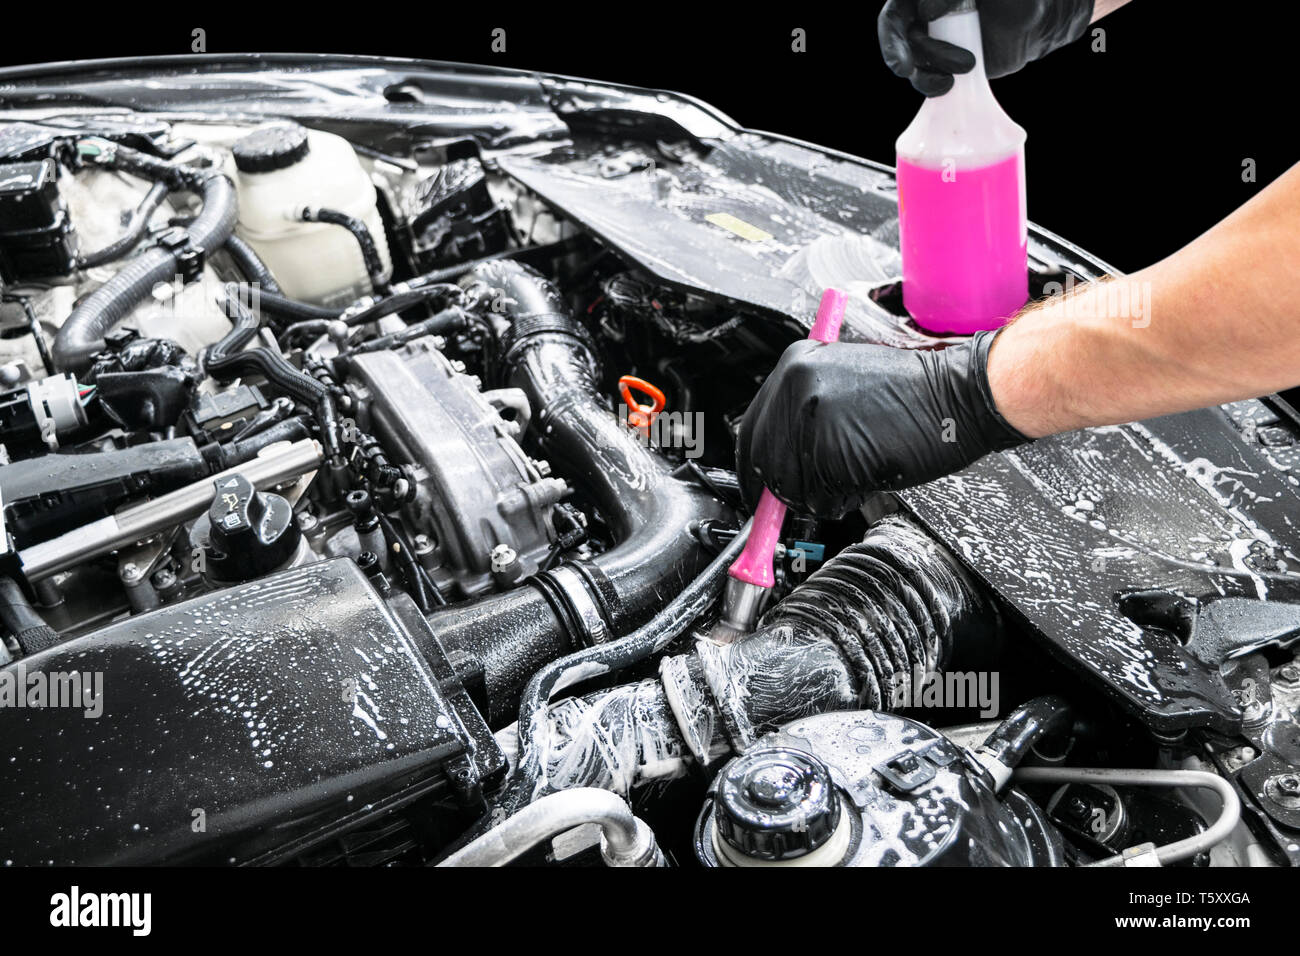 How to Use Engine Degreaser - NAPA Auto Parts - NAPA Canada blog